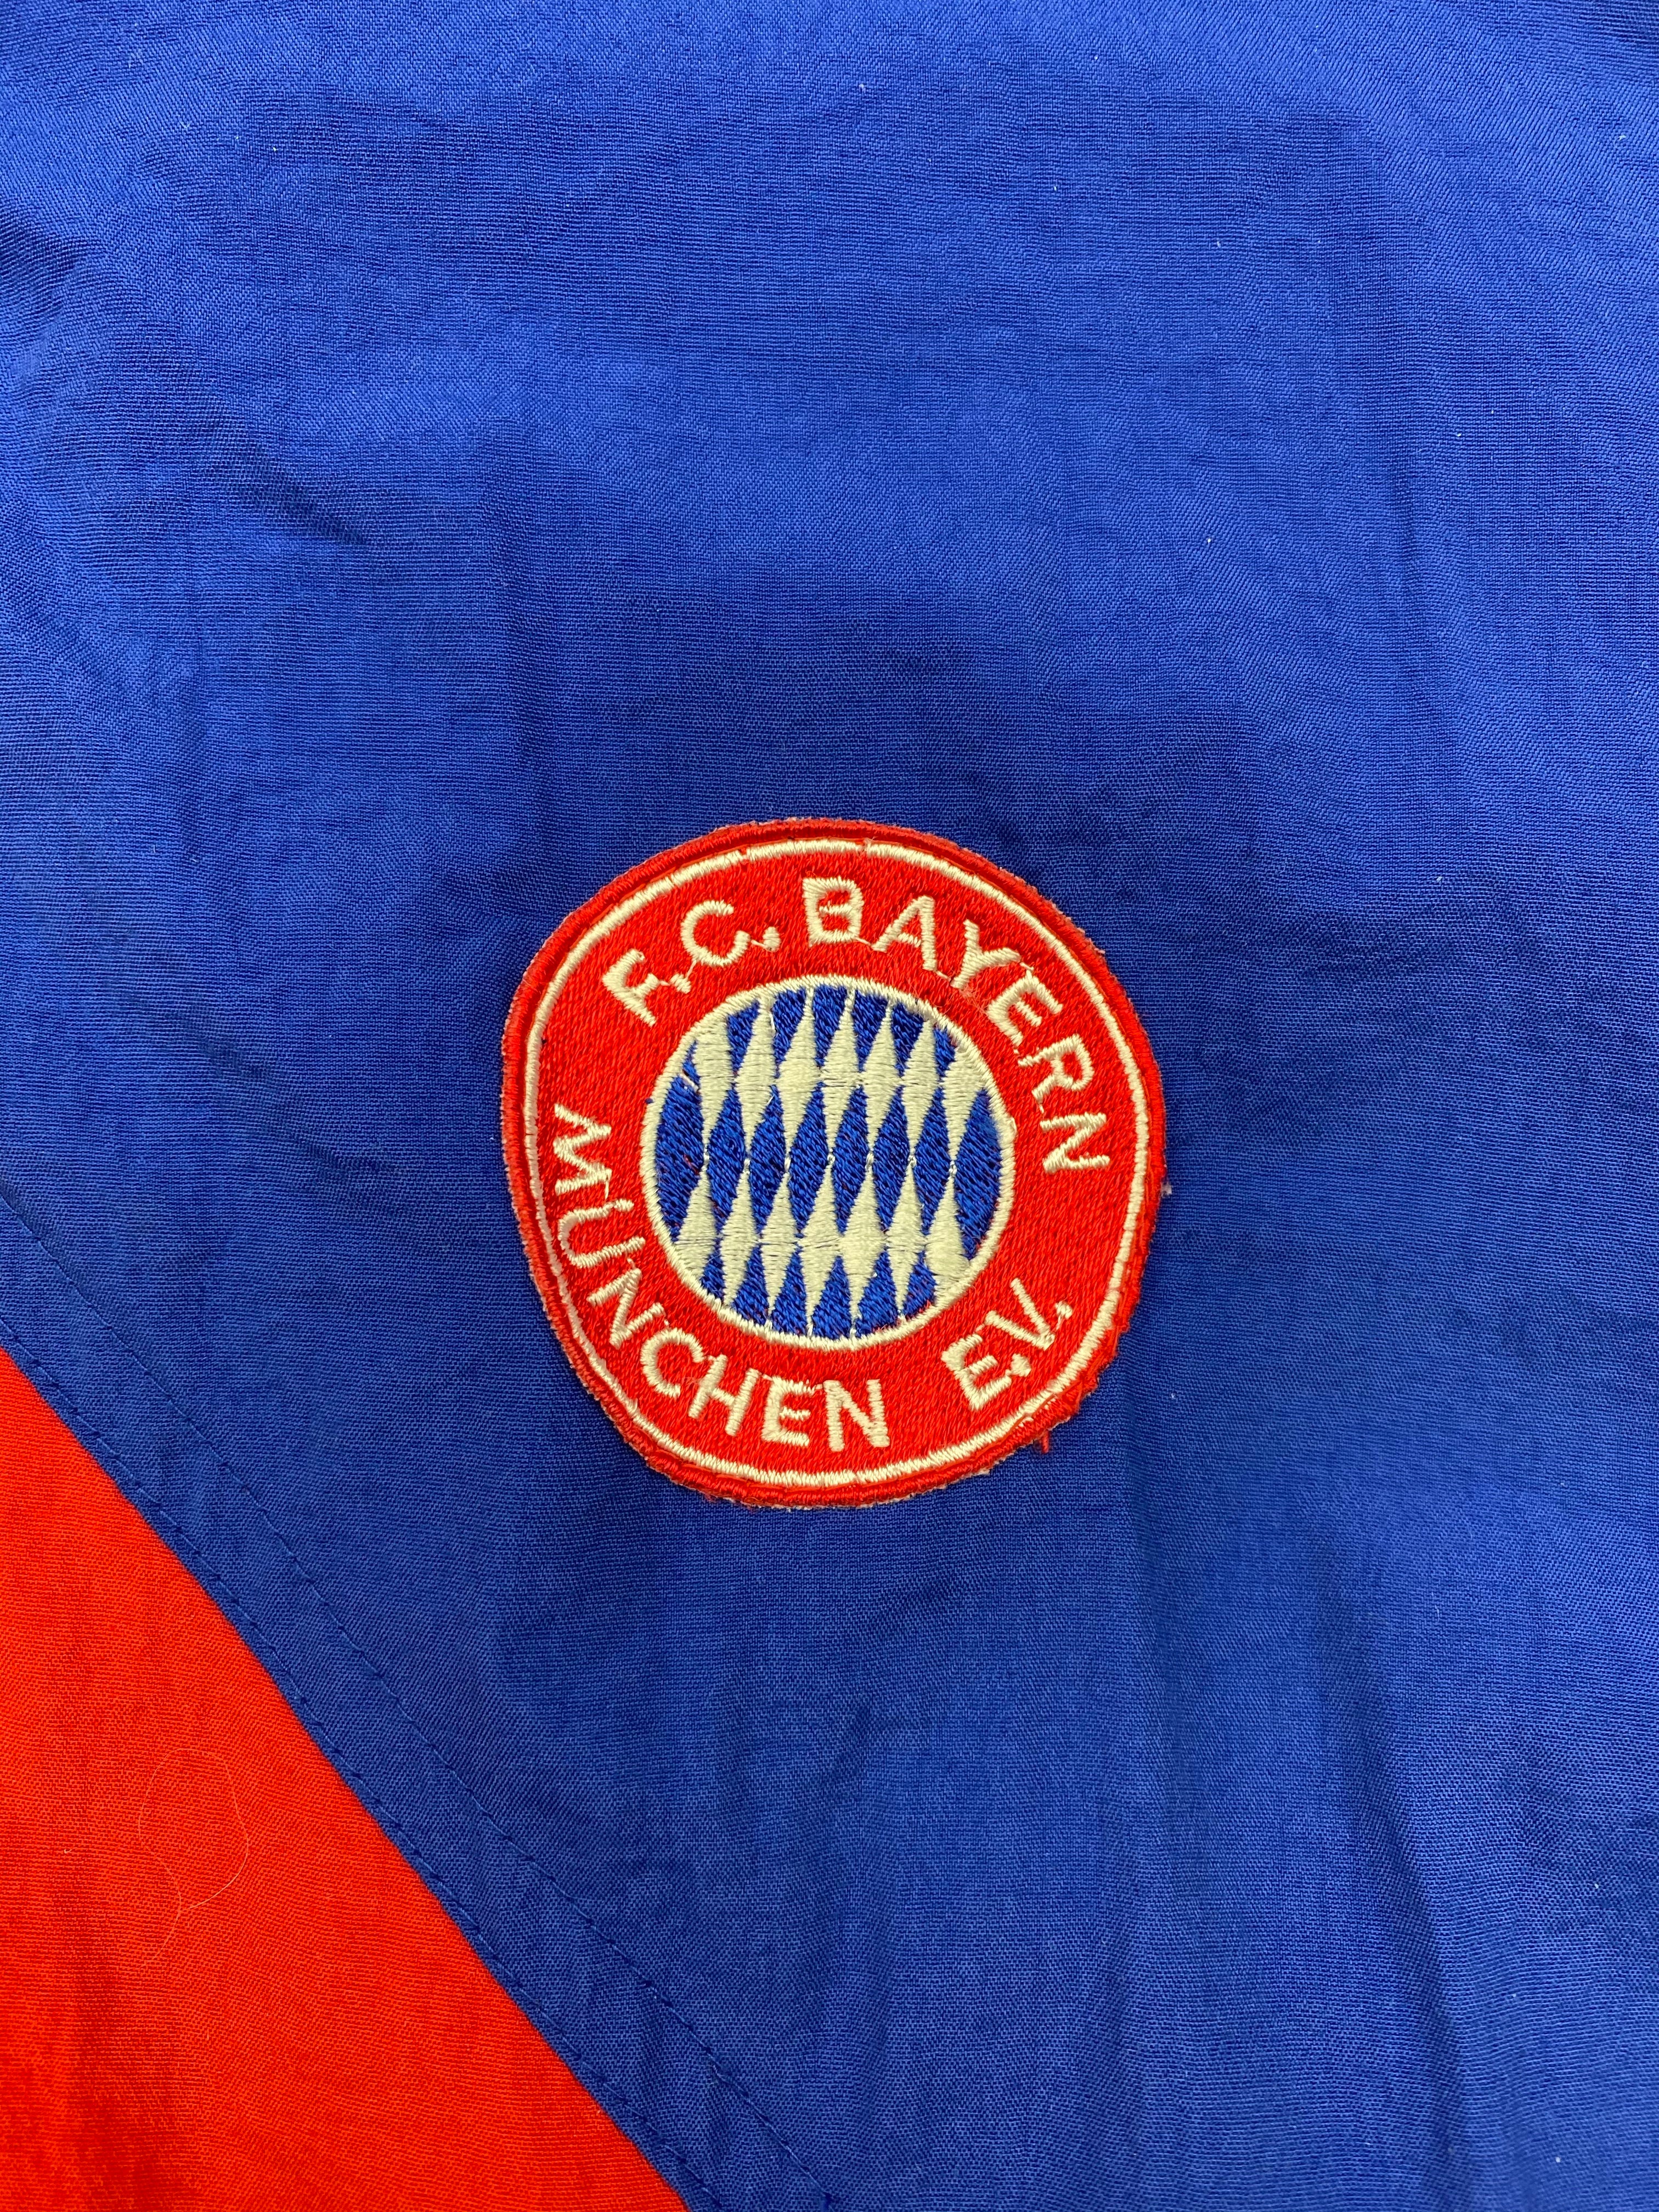 1993/95 Bayern Munich Padded Jacket (M) 9/10